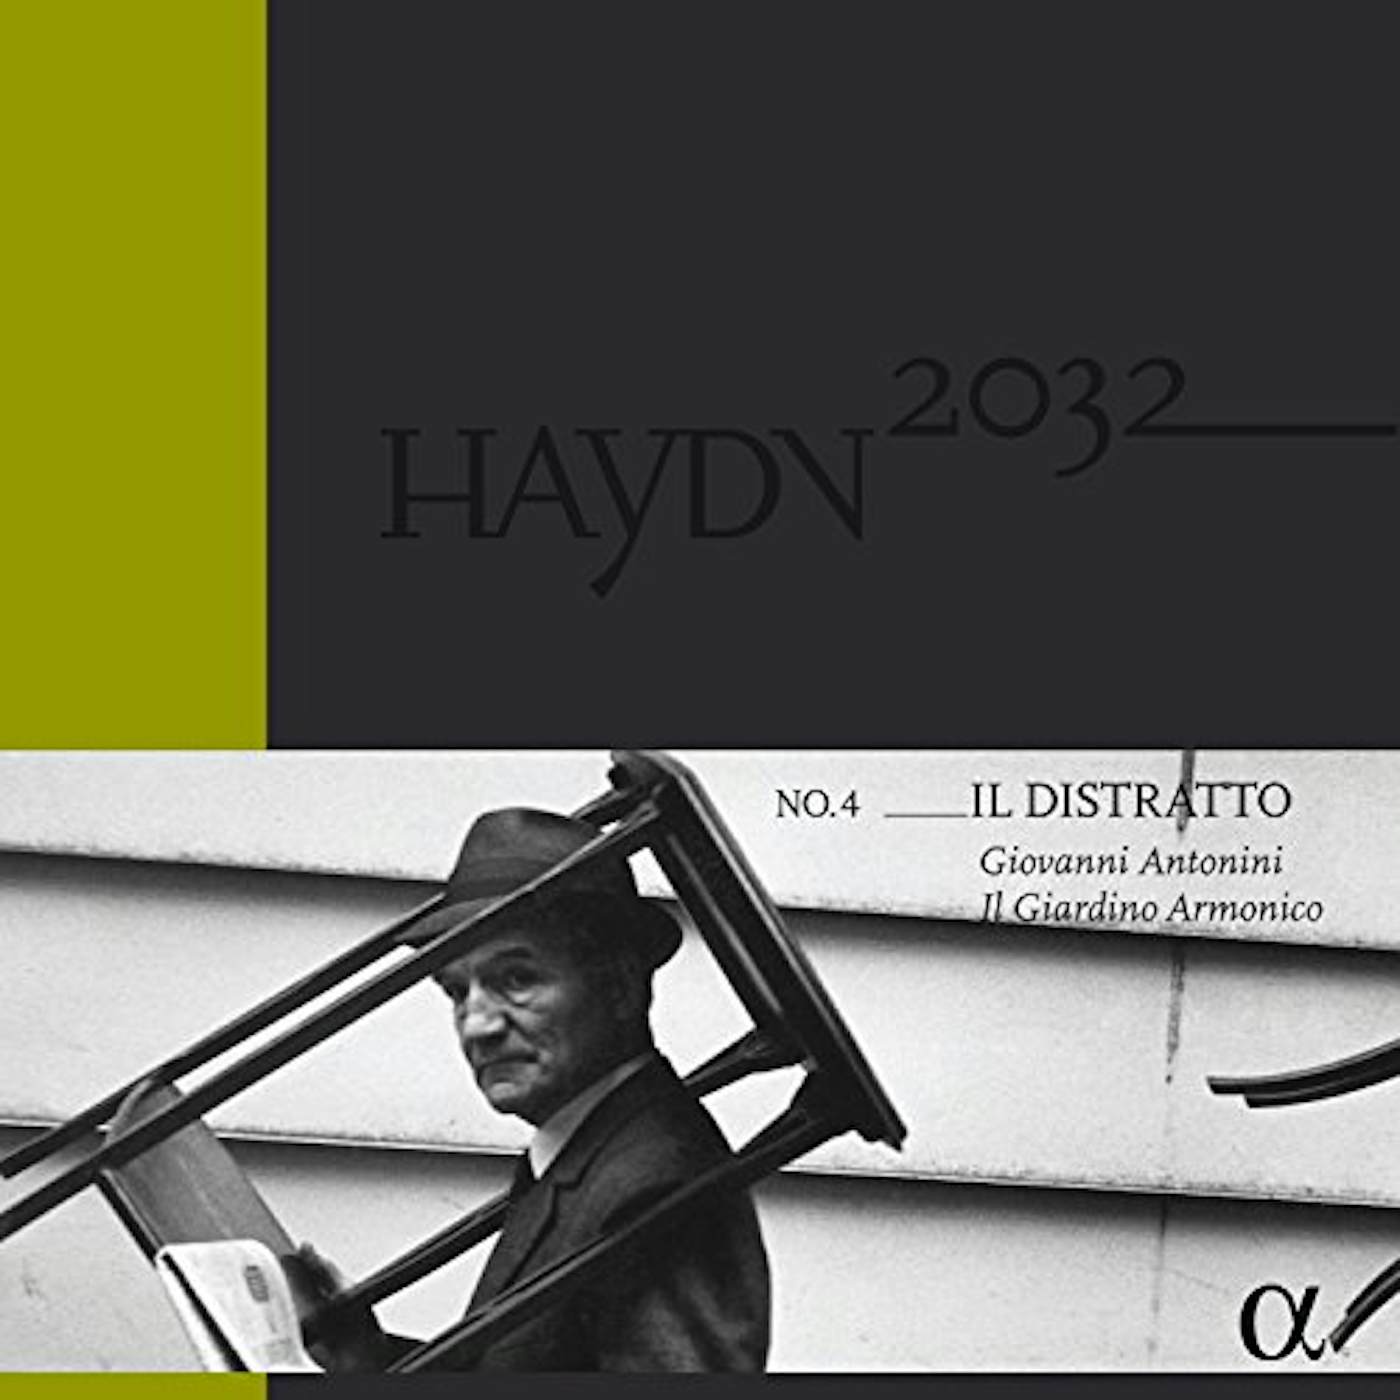 HAYDN2032: IL DISTRATTO VOL 4 Vinyl Record